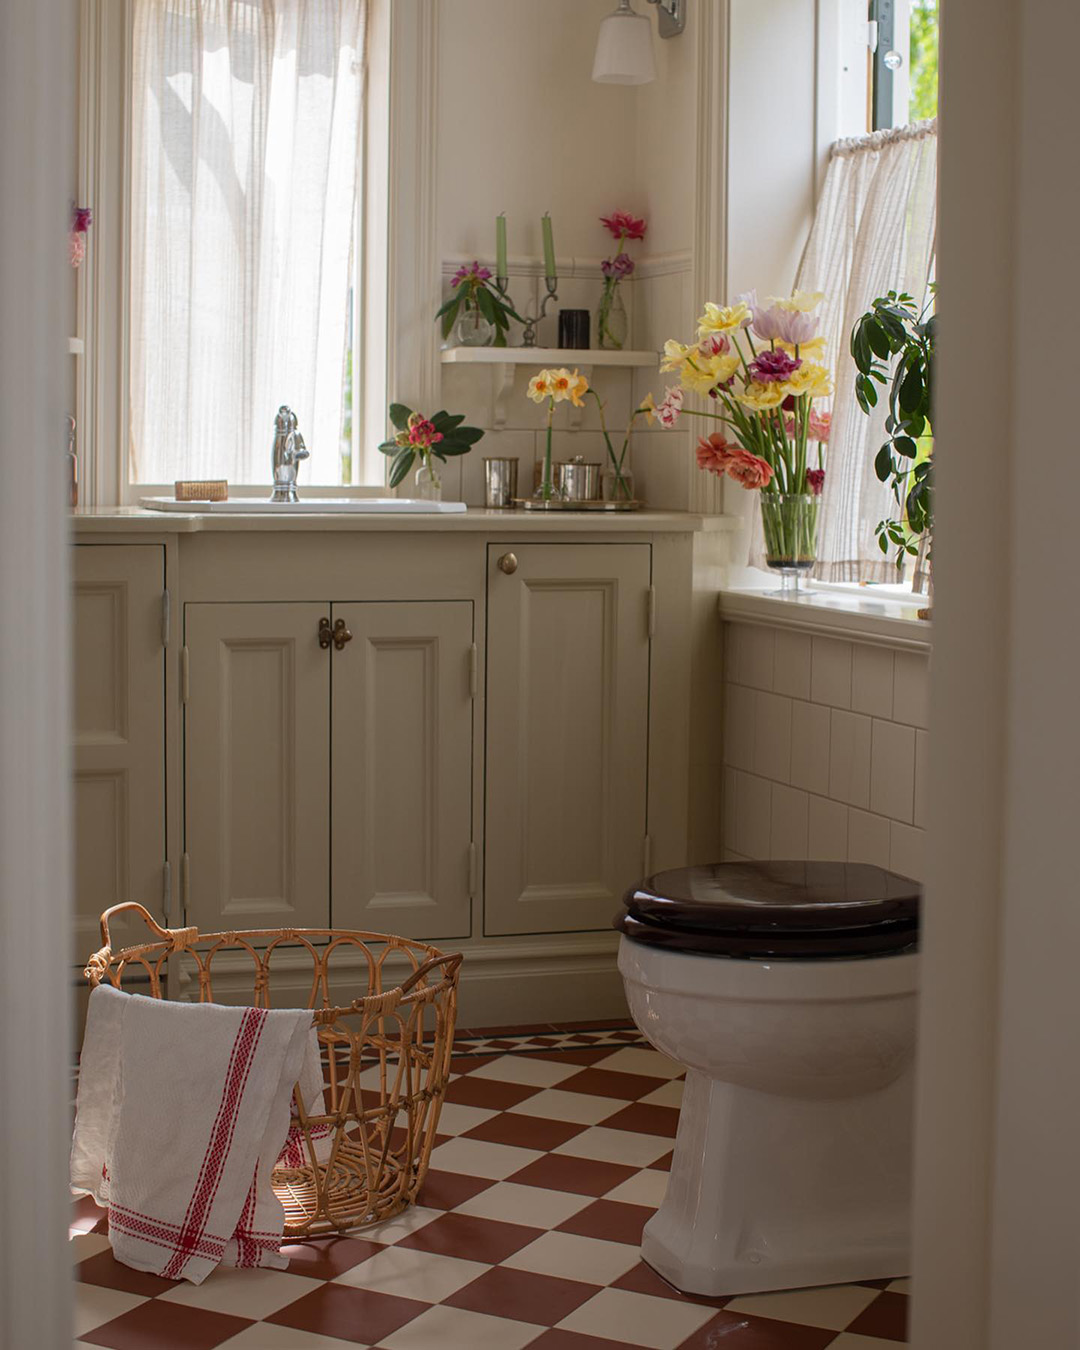 Lantligt badrum med platsbyggd inredning i trä med rödvitrutigt klinkergolv.